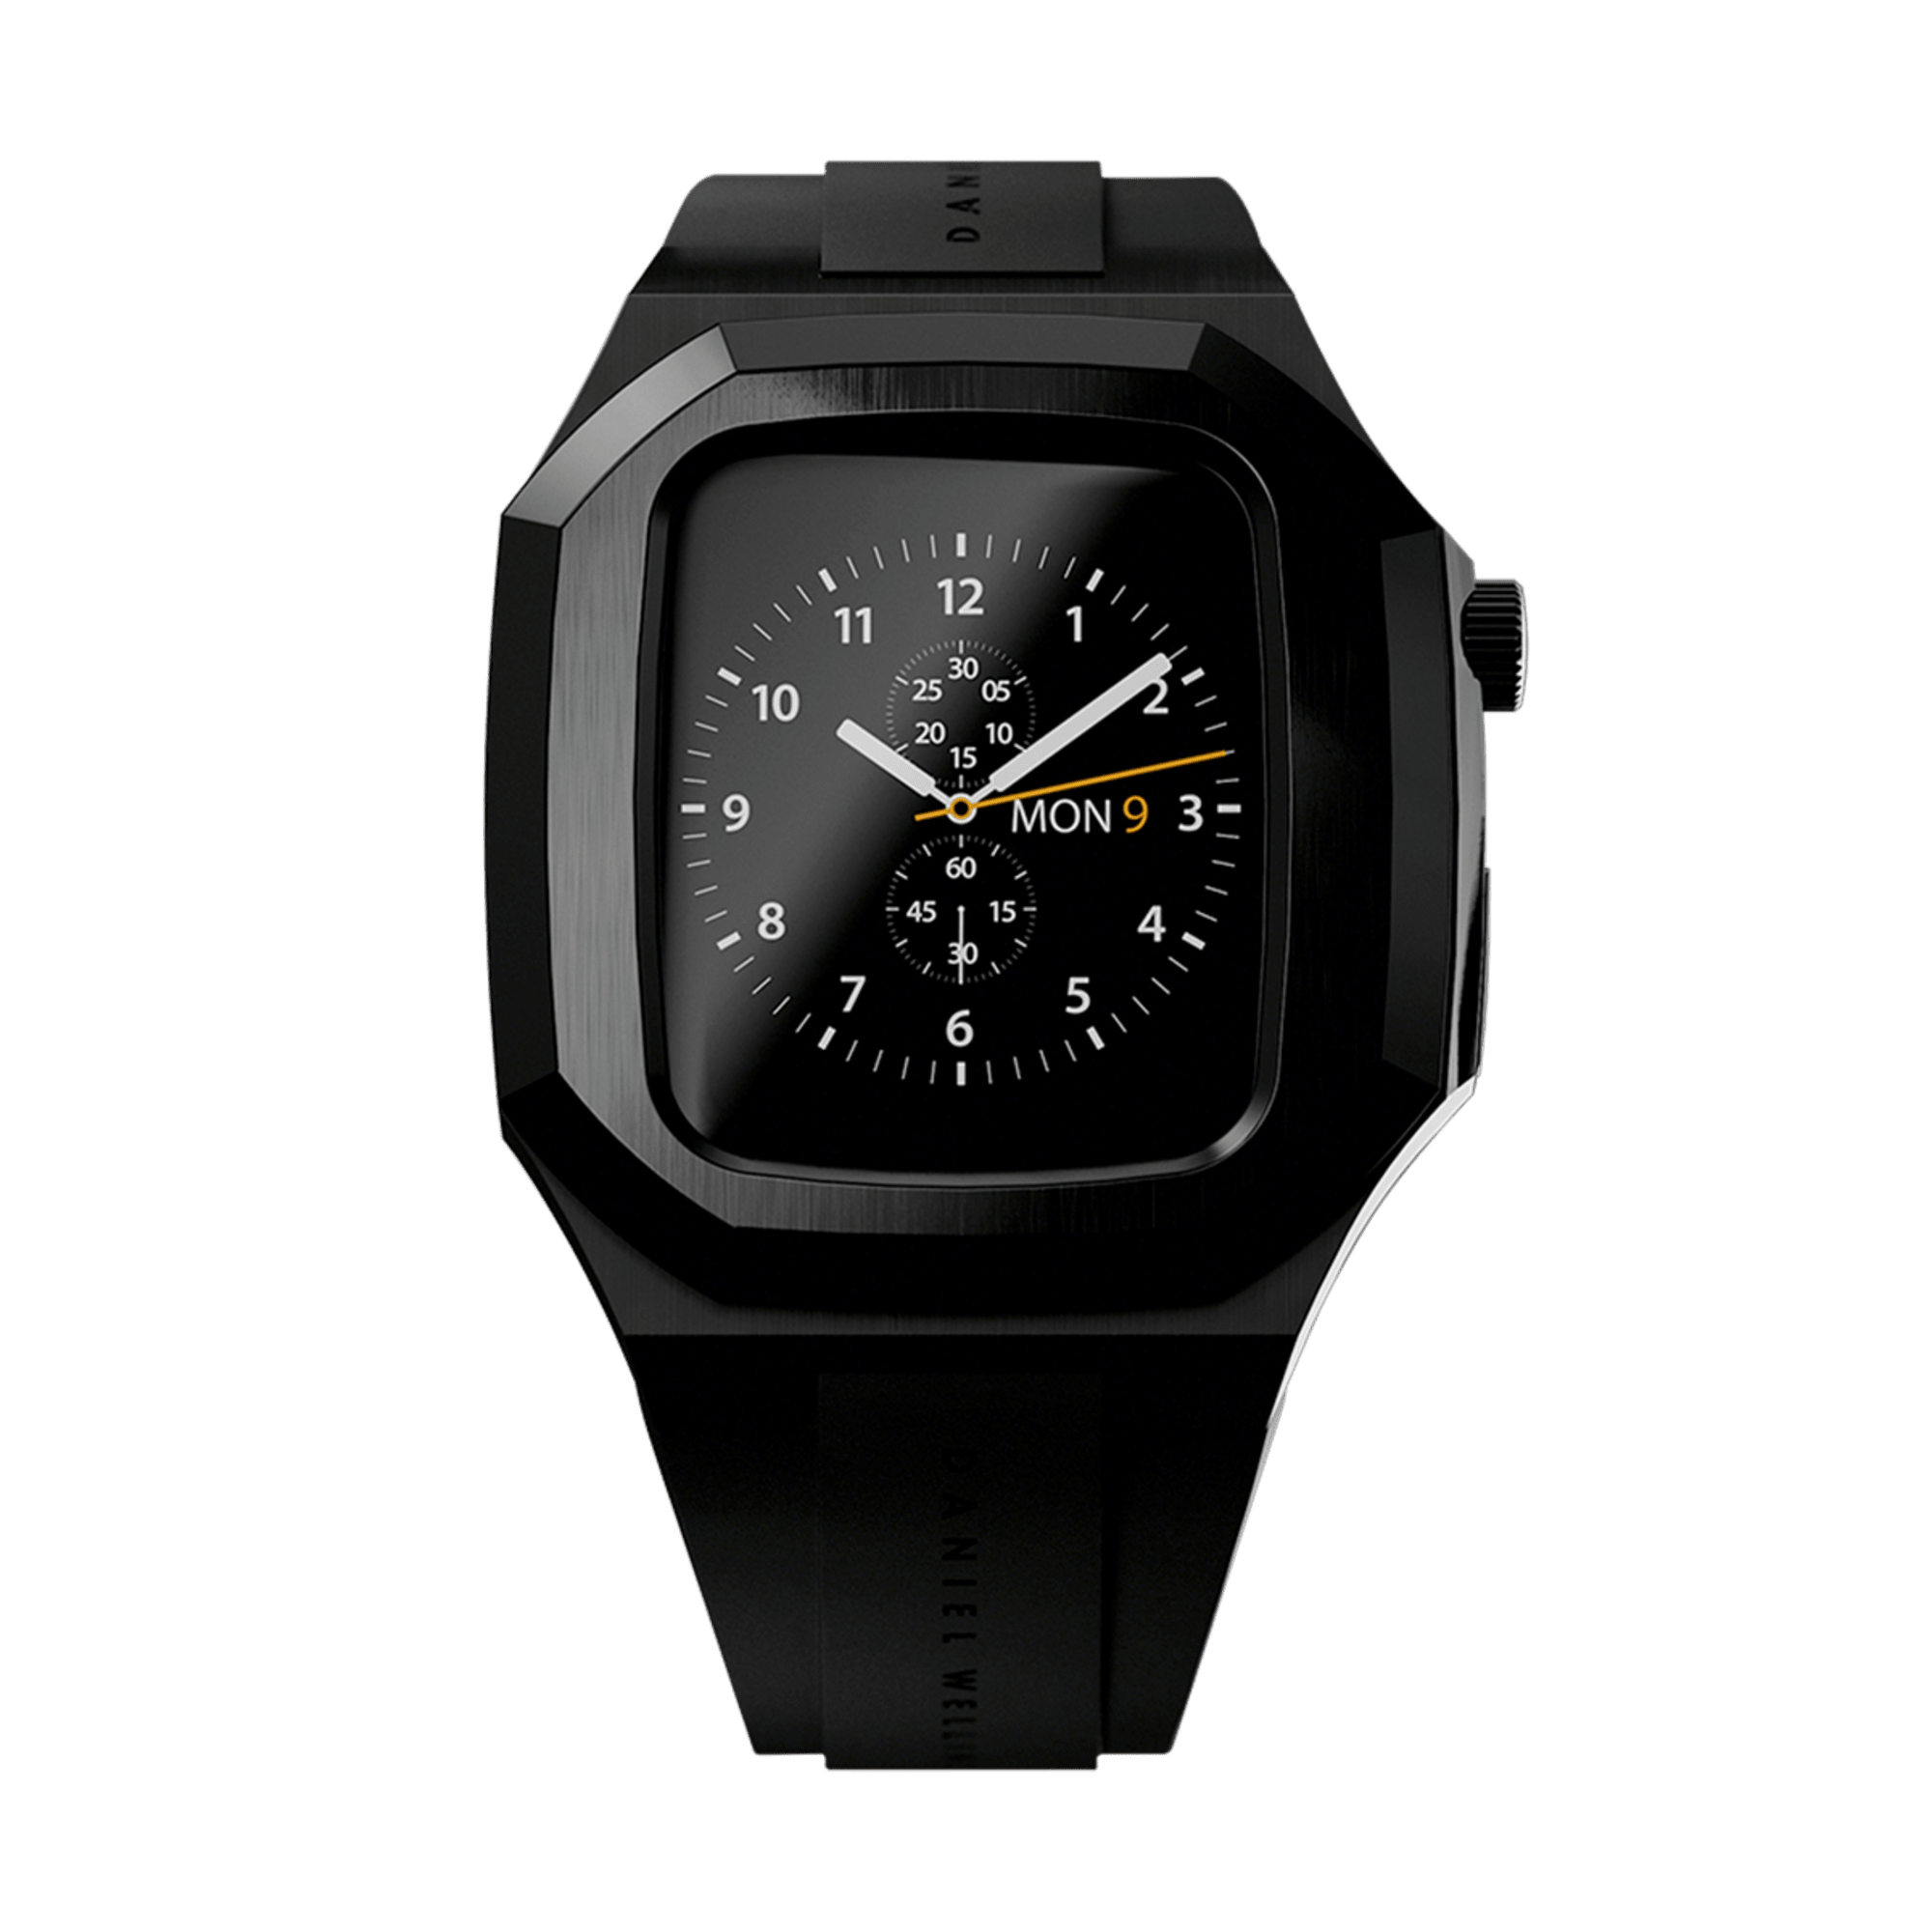 Smartwatch Case - Apple Watch Case Black - Size 40mm | DW – Daniel 